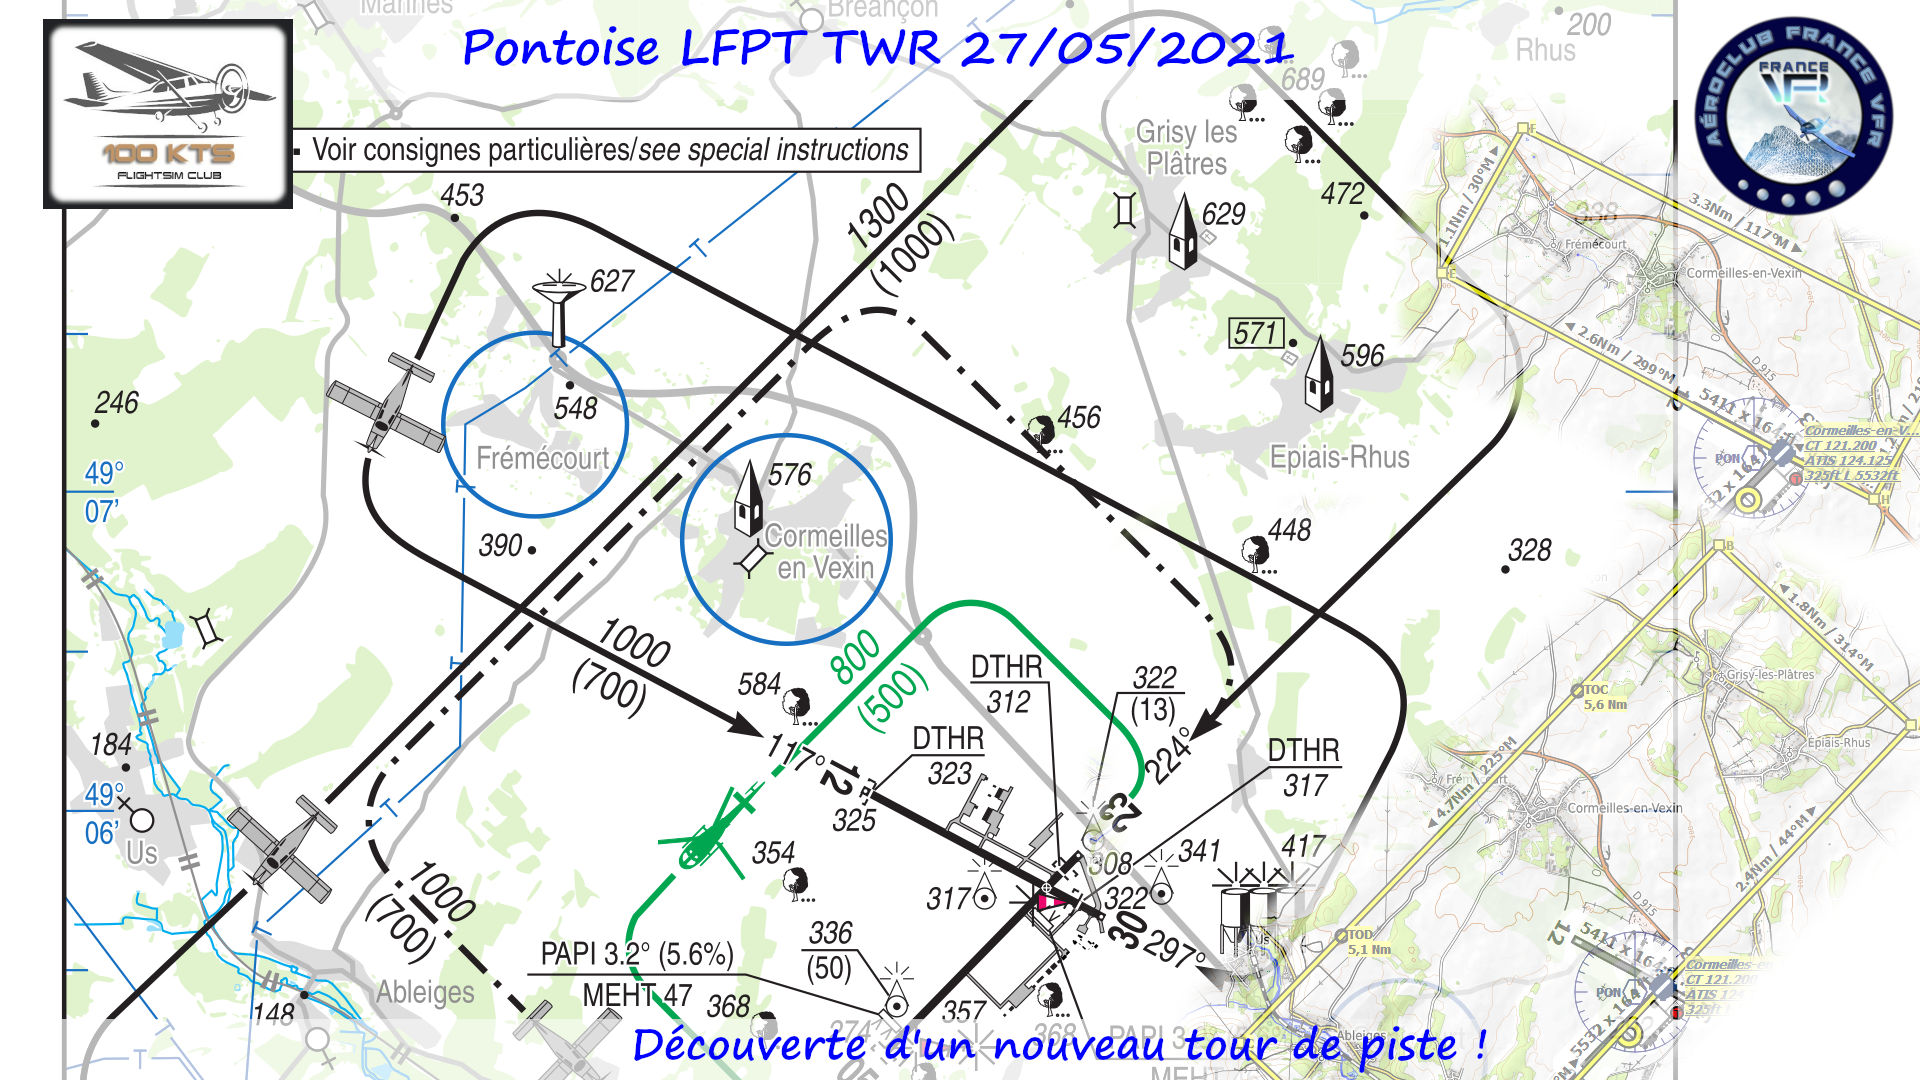 2021-05-27_LFPT_TWR-banniere